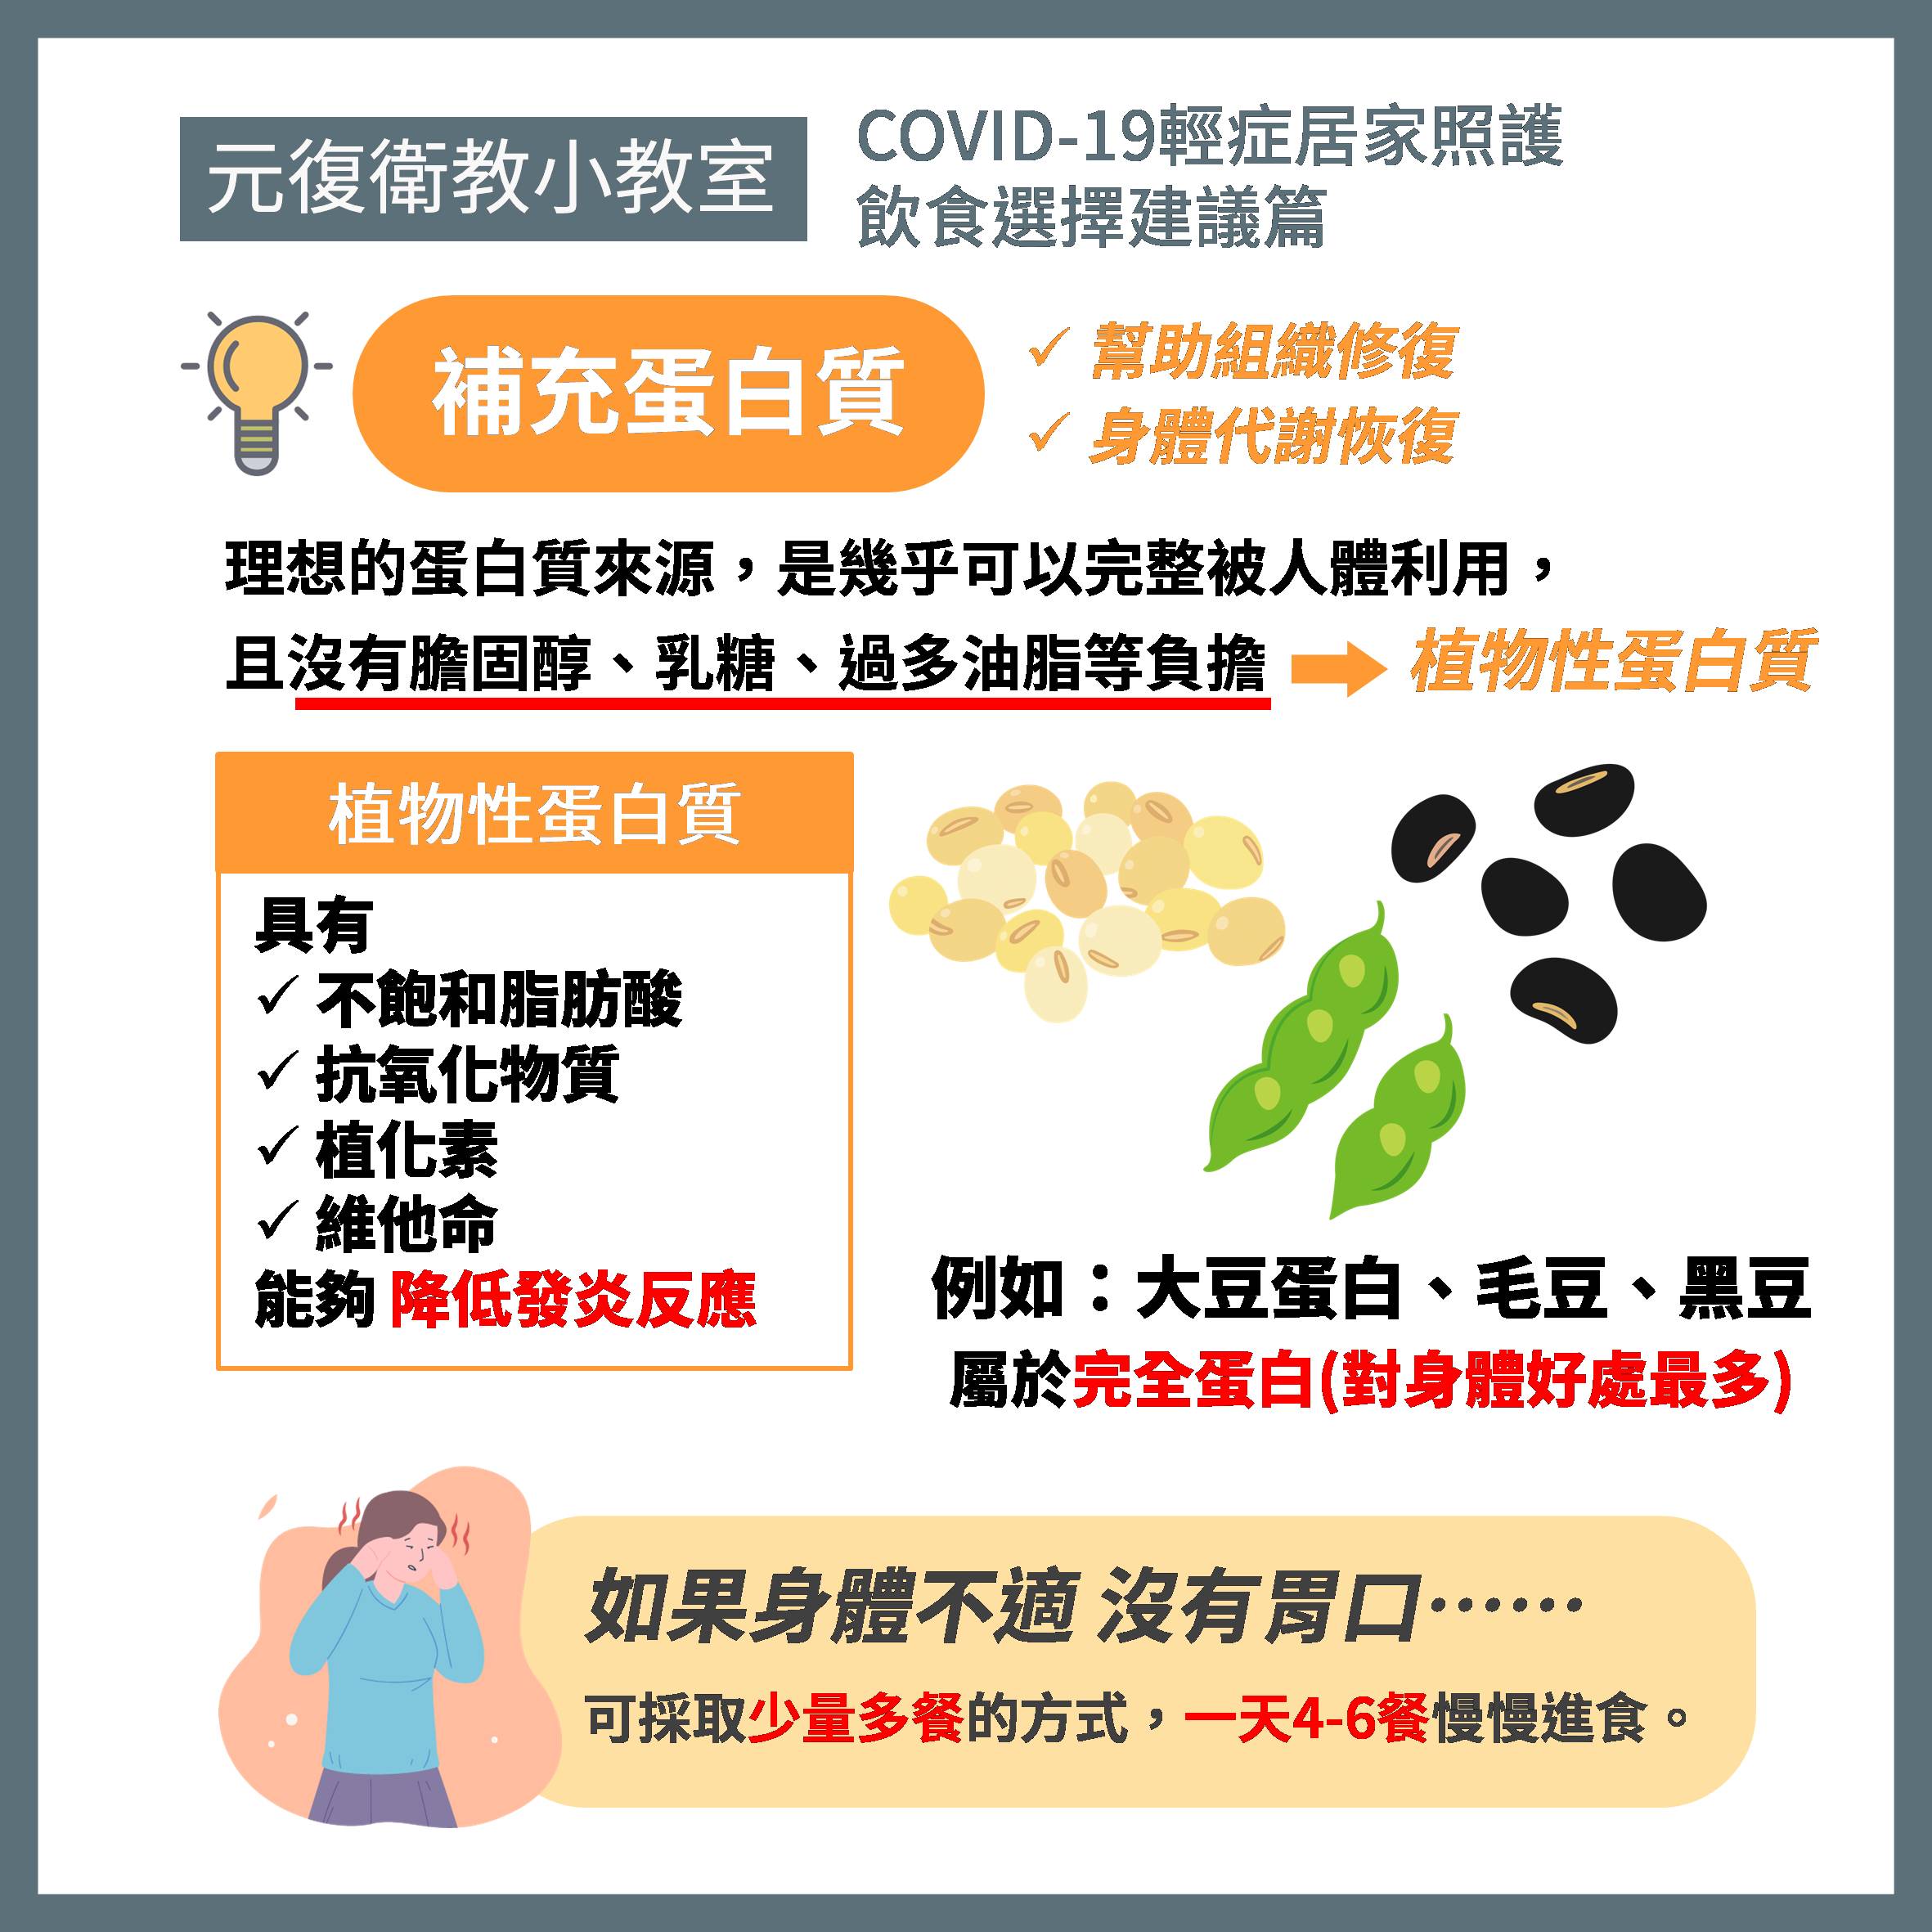 元復衛教小教室 / COVID-19輕症 居家照護飲食選擇建議篇